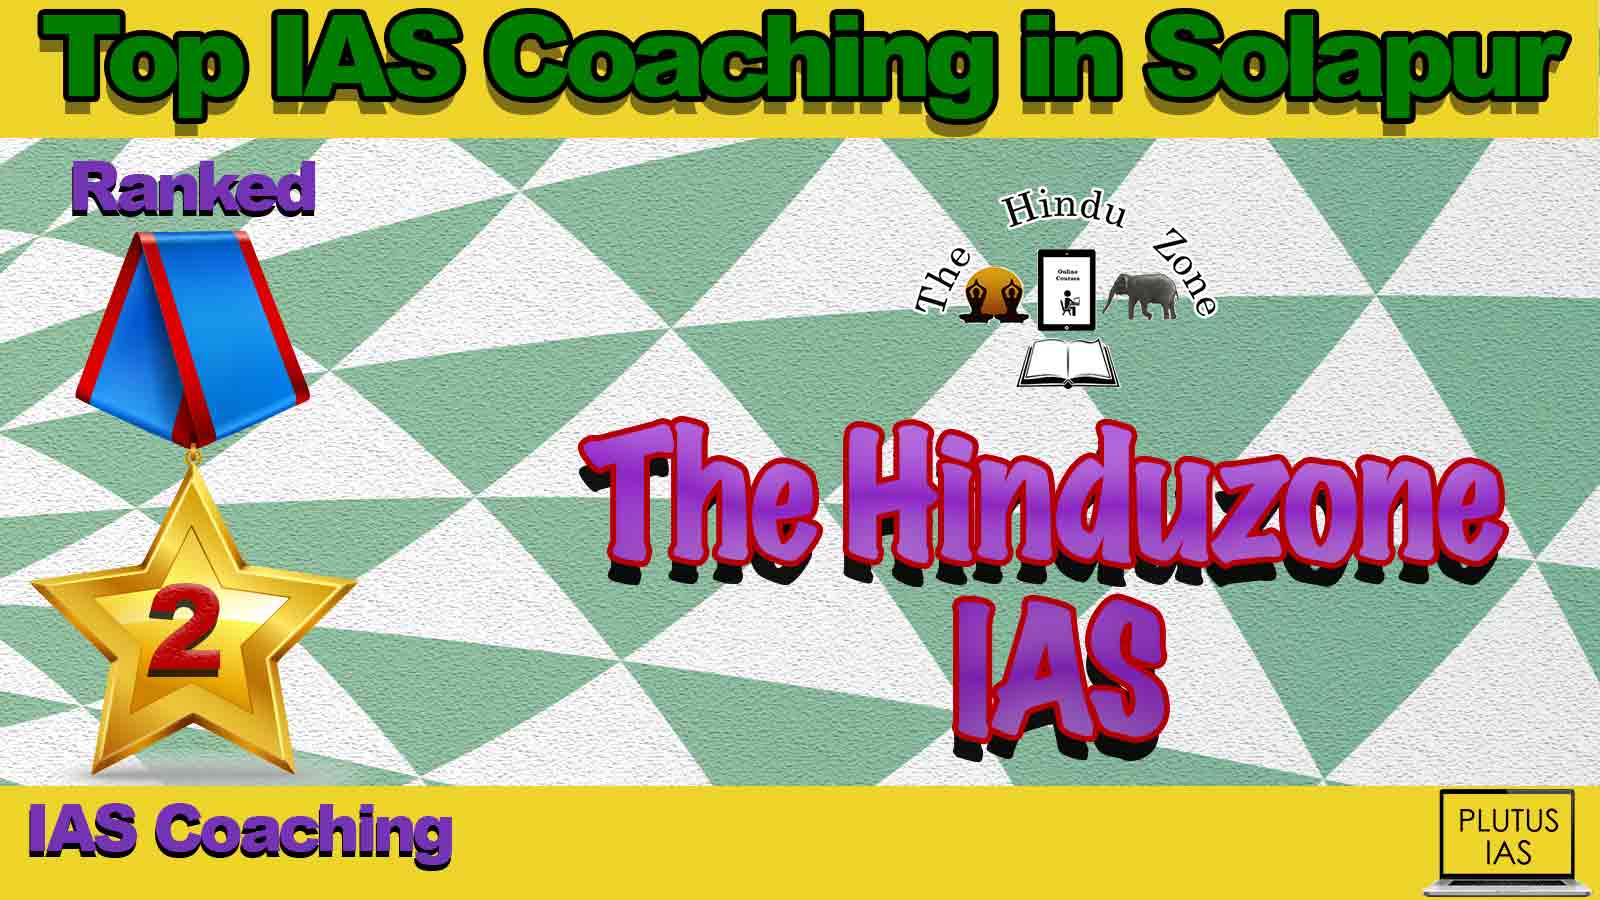 Best IAS Coaching in Solapur